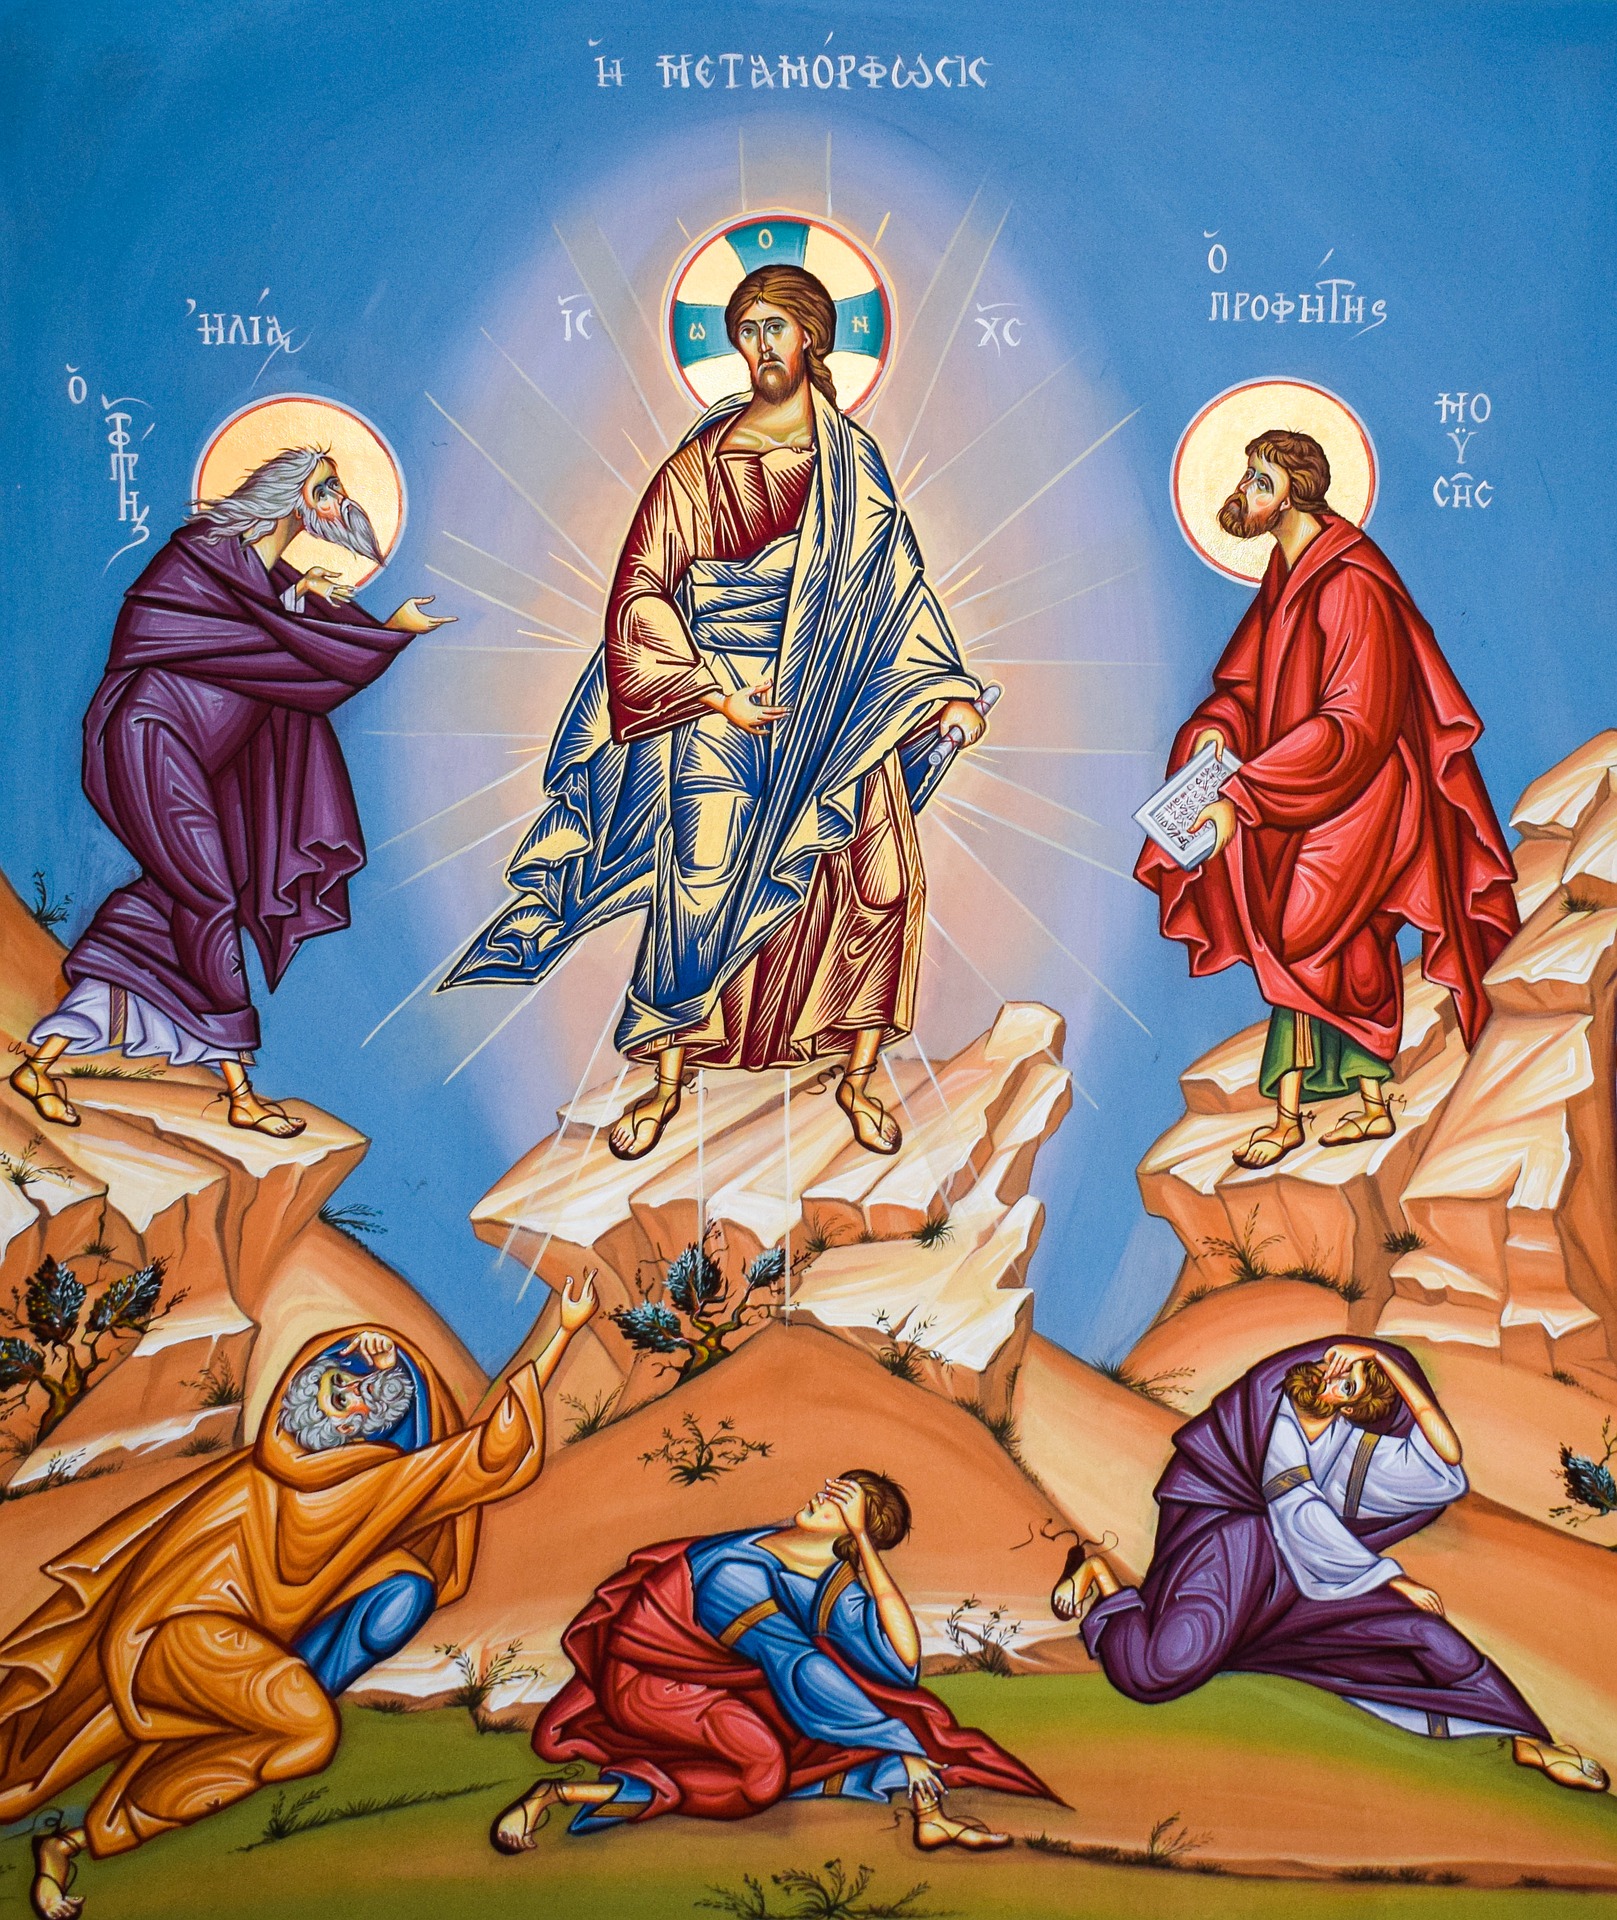 transfiguration-of-christ-g36e4b0df9_1920 (c) pi